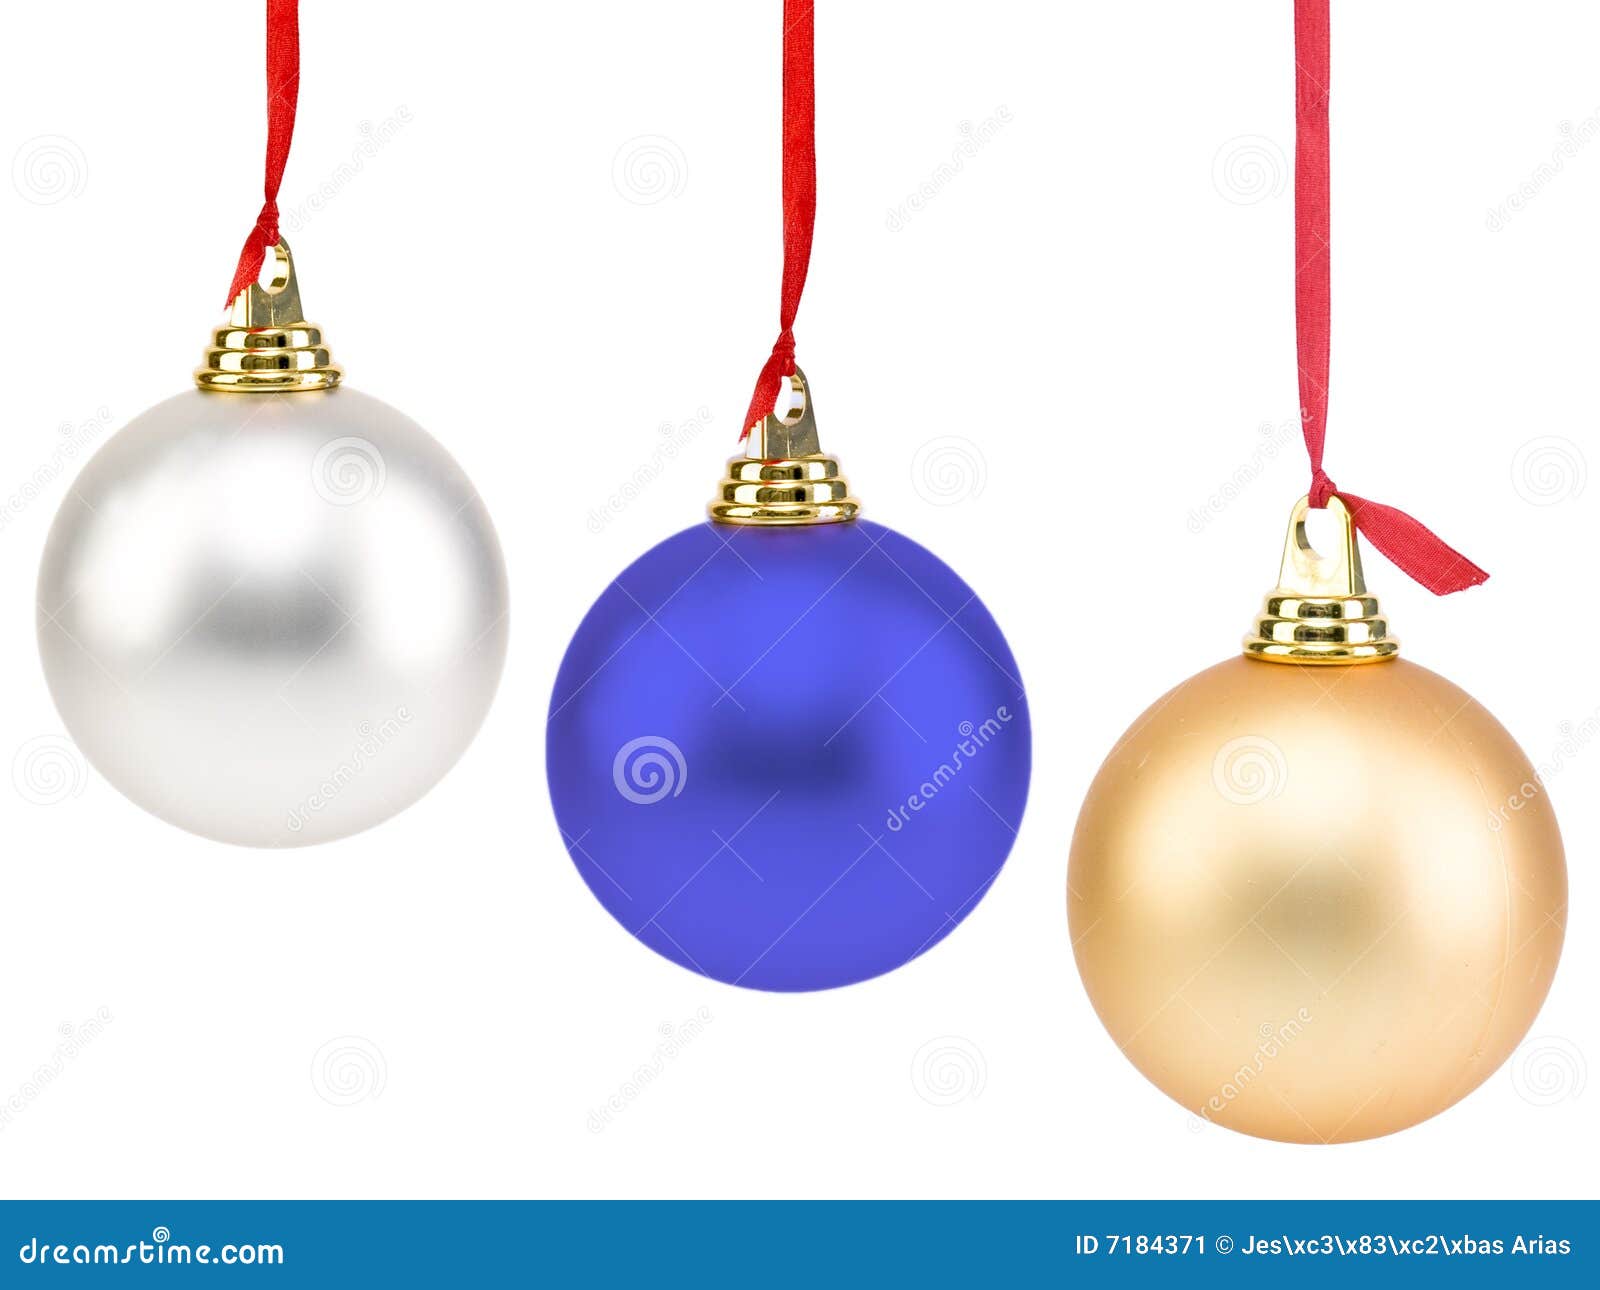 De Ballen van Kerstmis die op wit worden geïsoleerd.